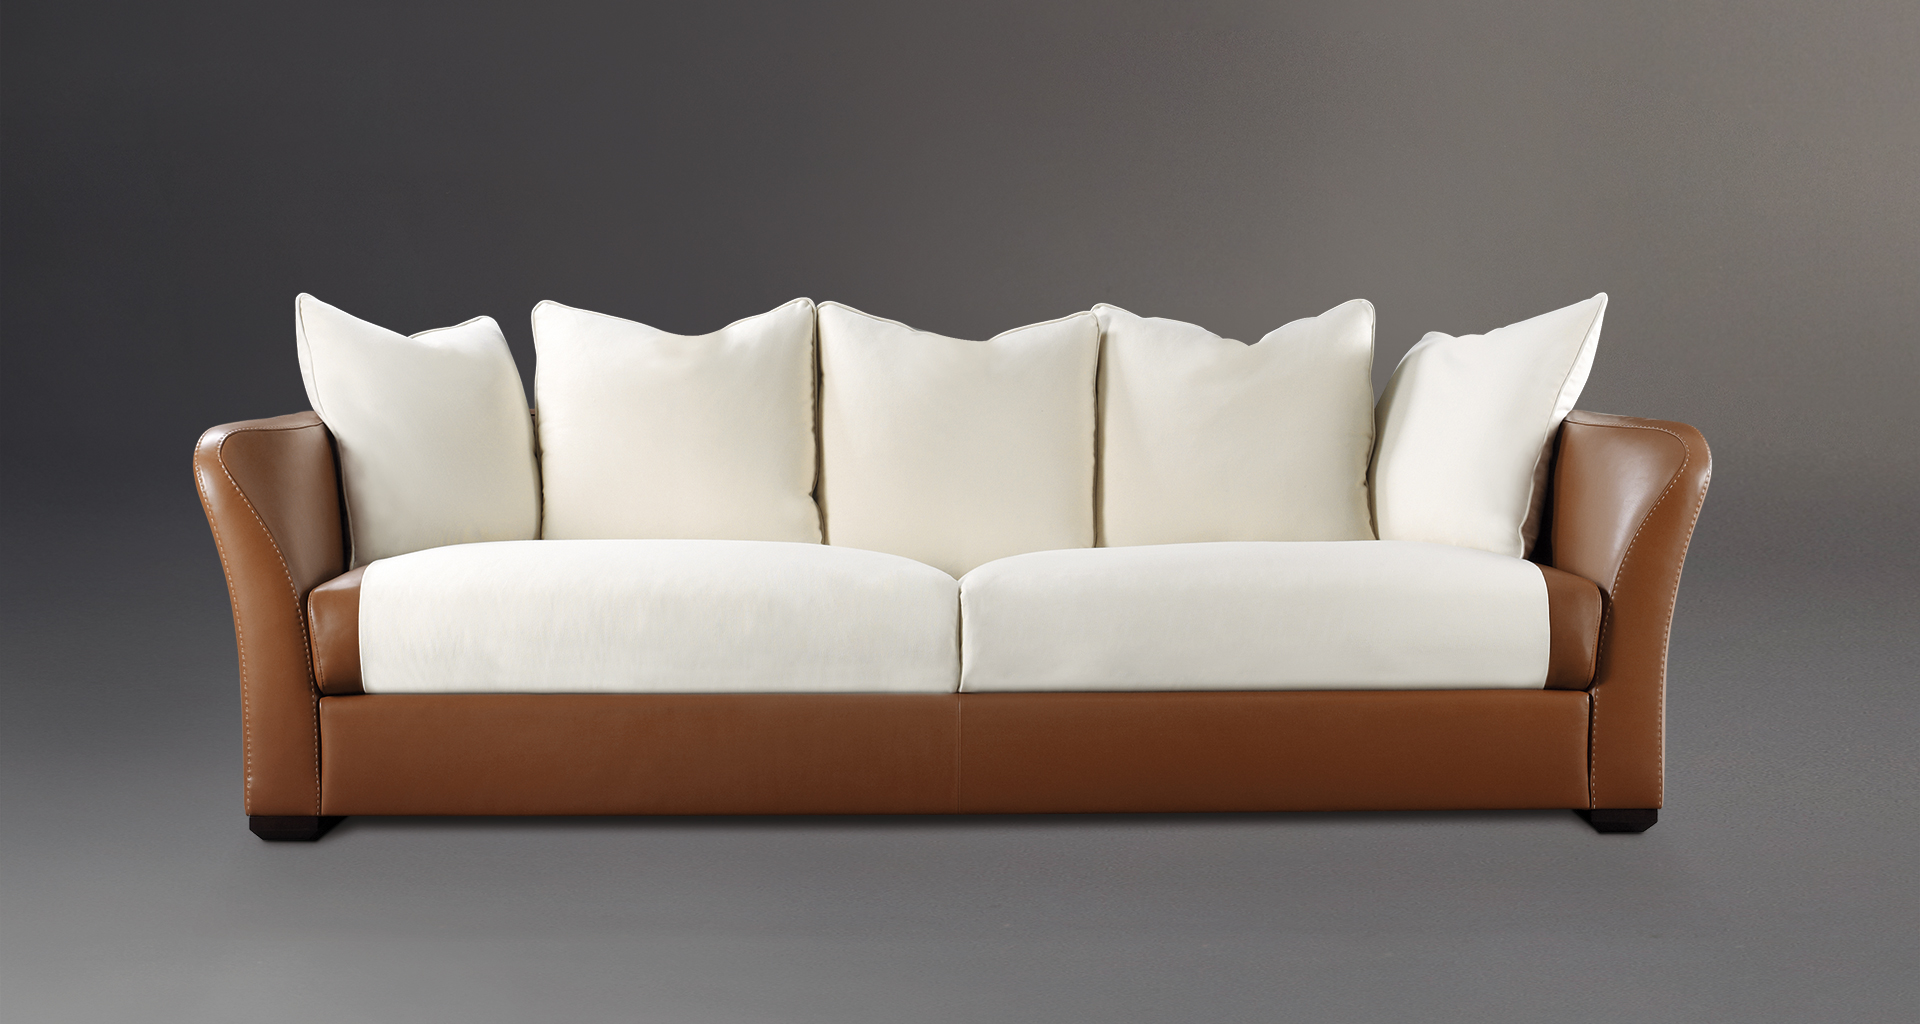 Shangri-la è un divano in legno rivestito in pelle e tessuto, del catalogo di Promemoria | Promemoria